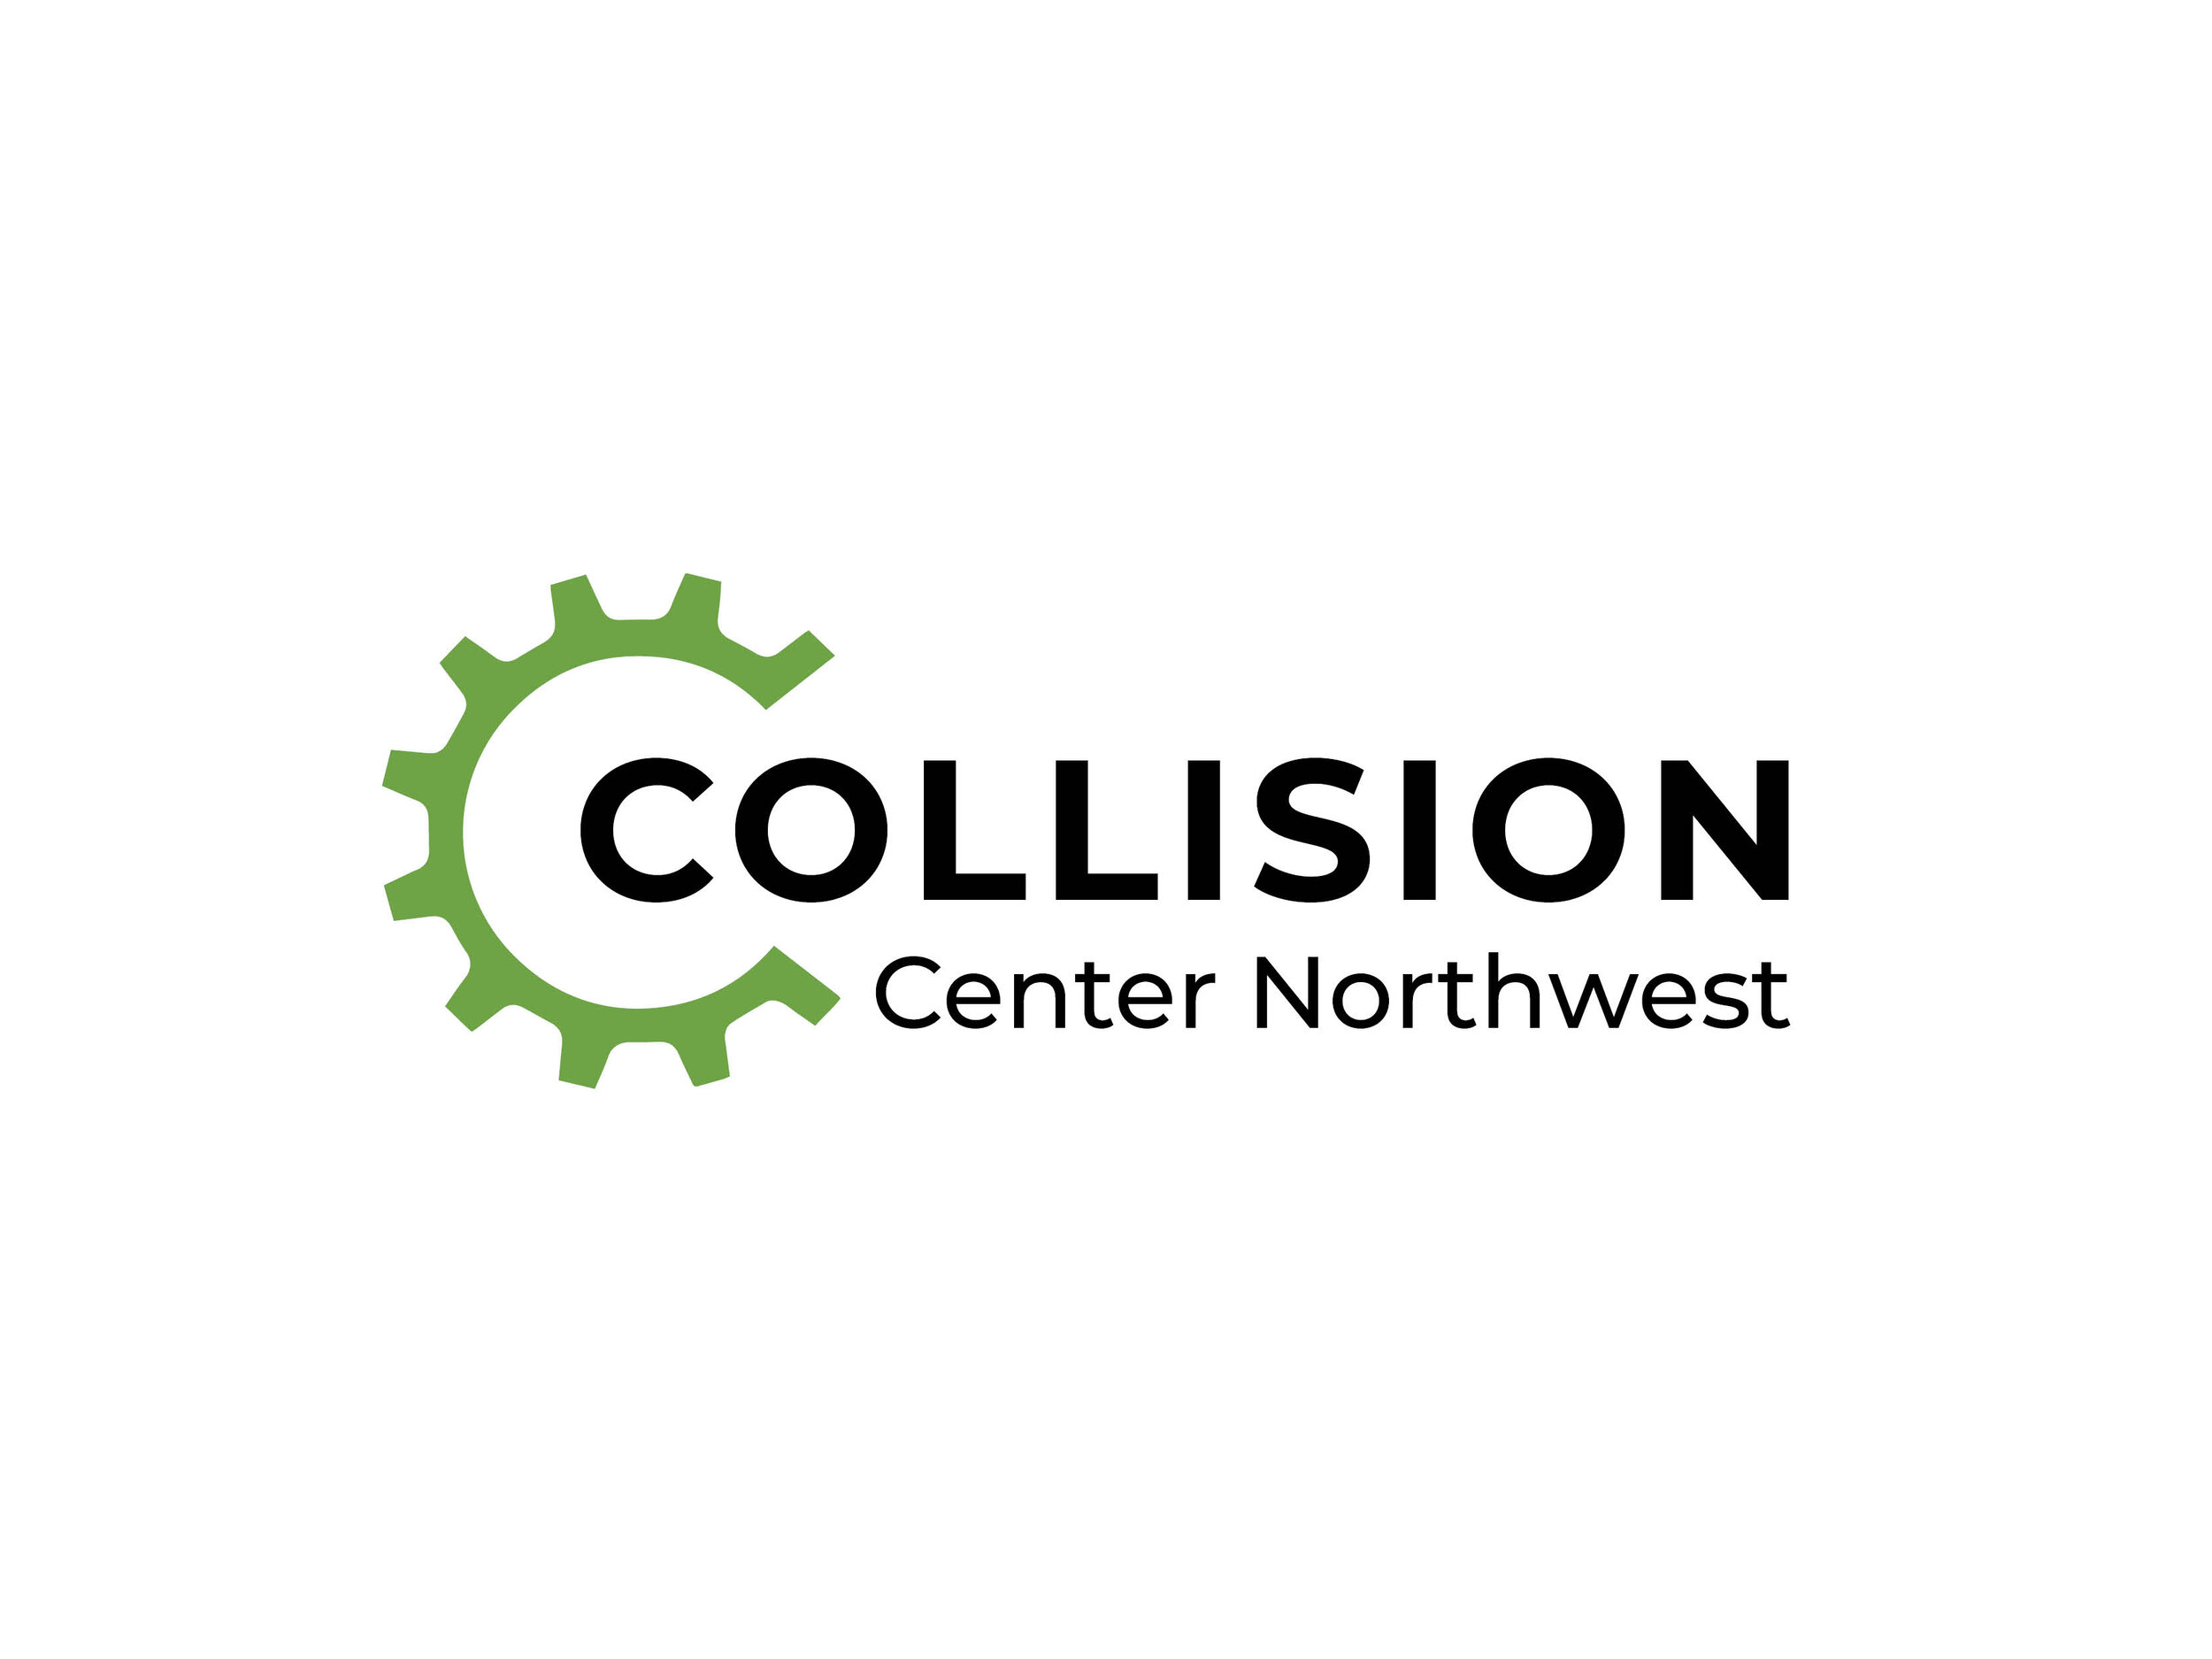 Collision Center Northwest G Disain3.jpg